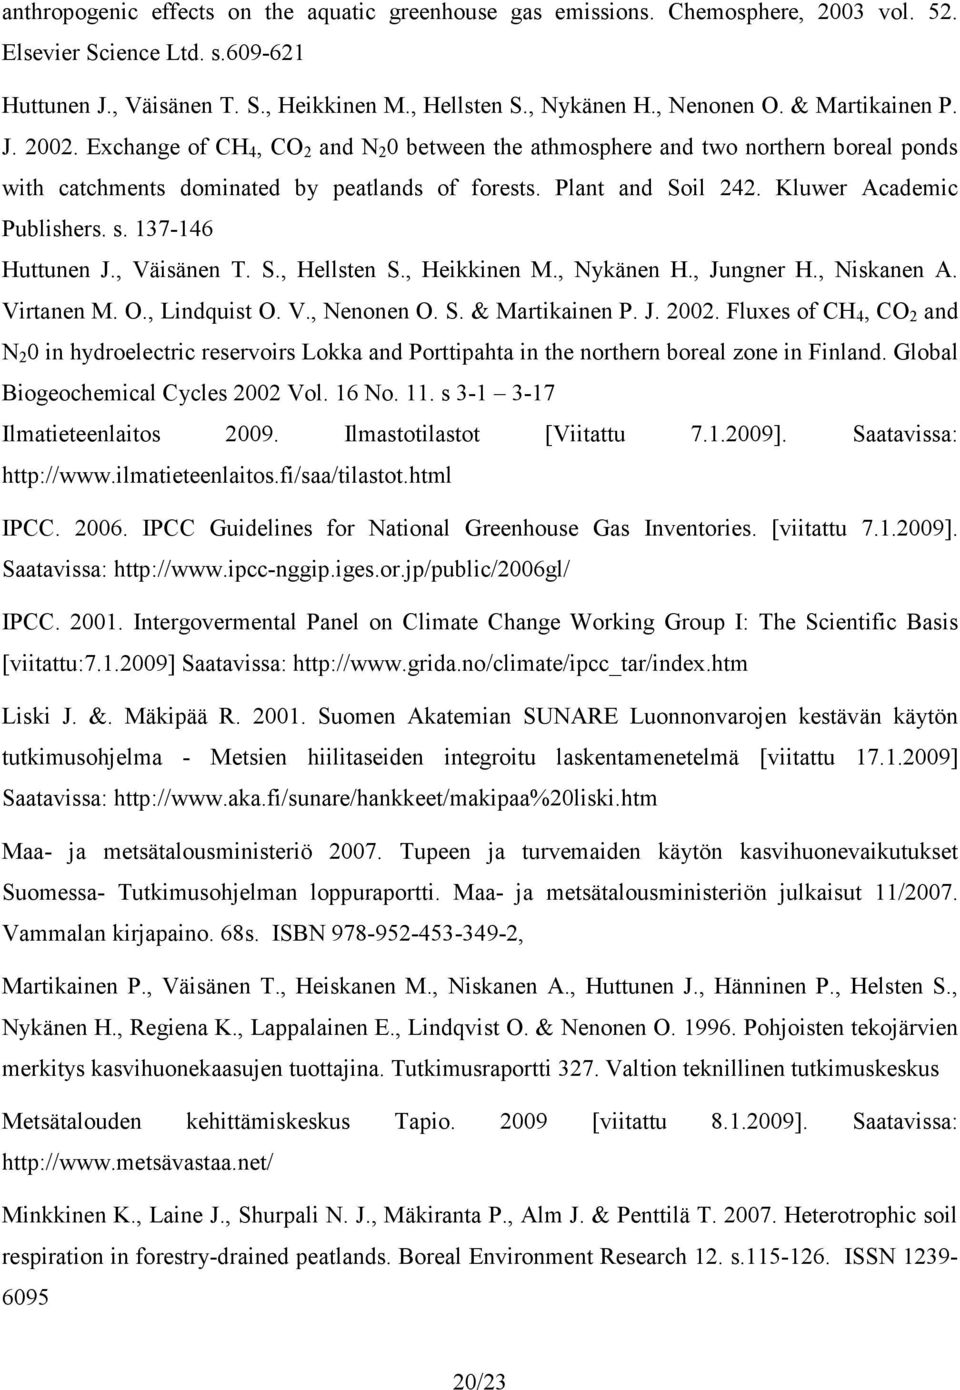 Kluwer Academic Publishers. s. 137-146 Huttunen J., Väisänen T. S., Hellsten S., Heikkinen M., Nykänen H., Jungner H., Niskanen A. Virtanen M. O., Lindquist O. V., Nenonen O. S. & Martikainen P. J. 2002.